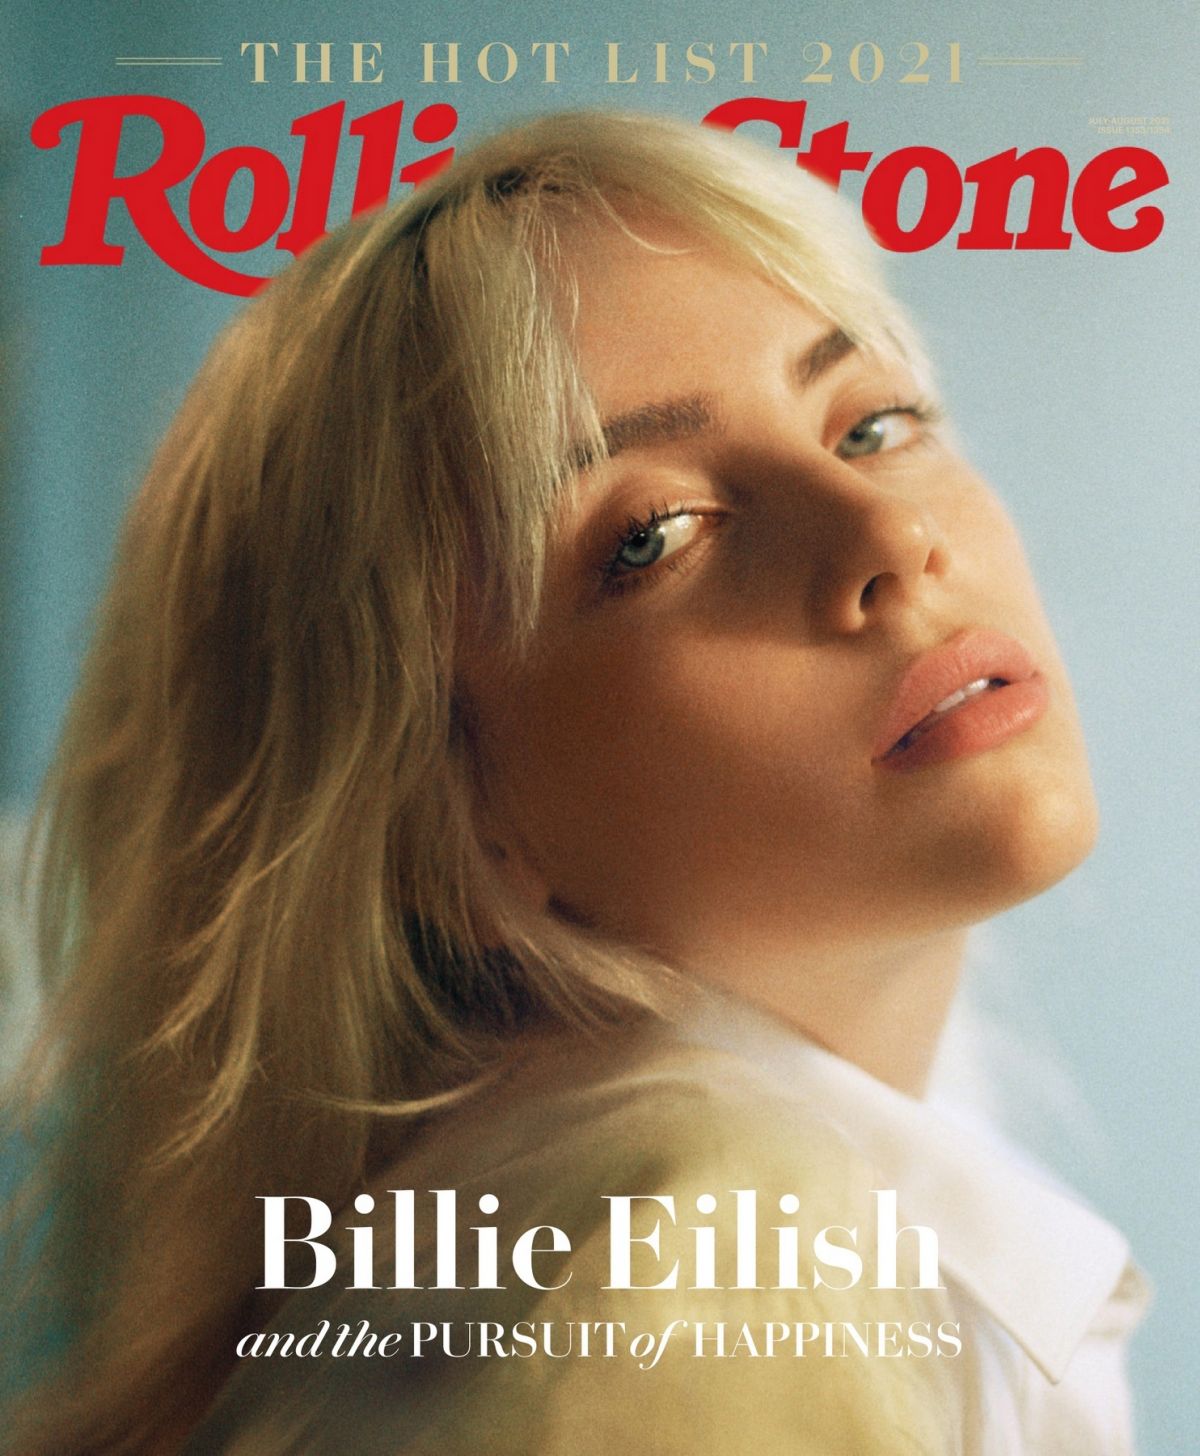 billie-eilish-in-rolling-stone-magazine-hot-list-2021-6.jpg